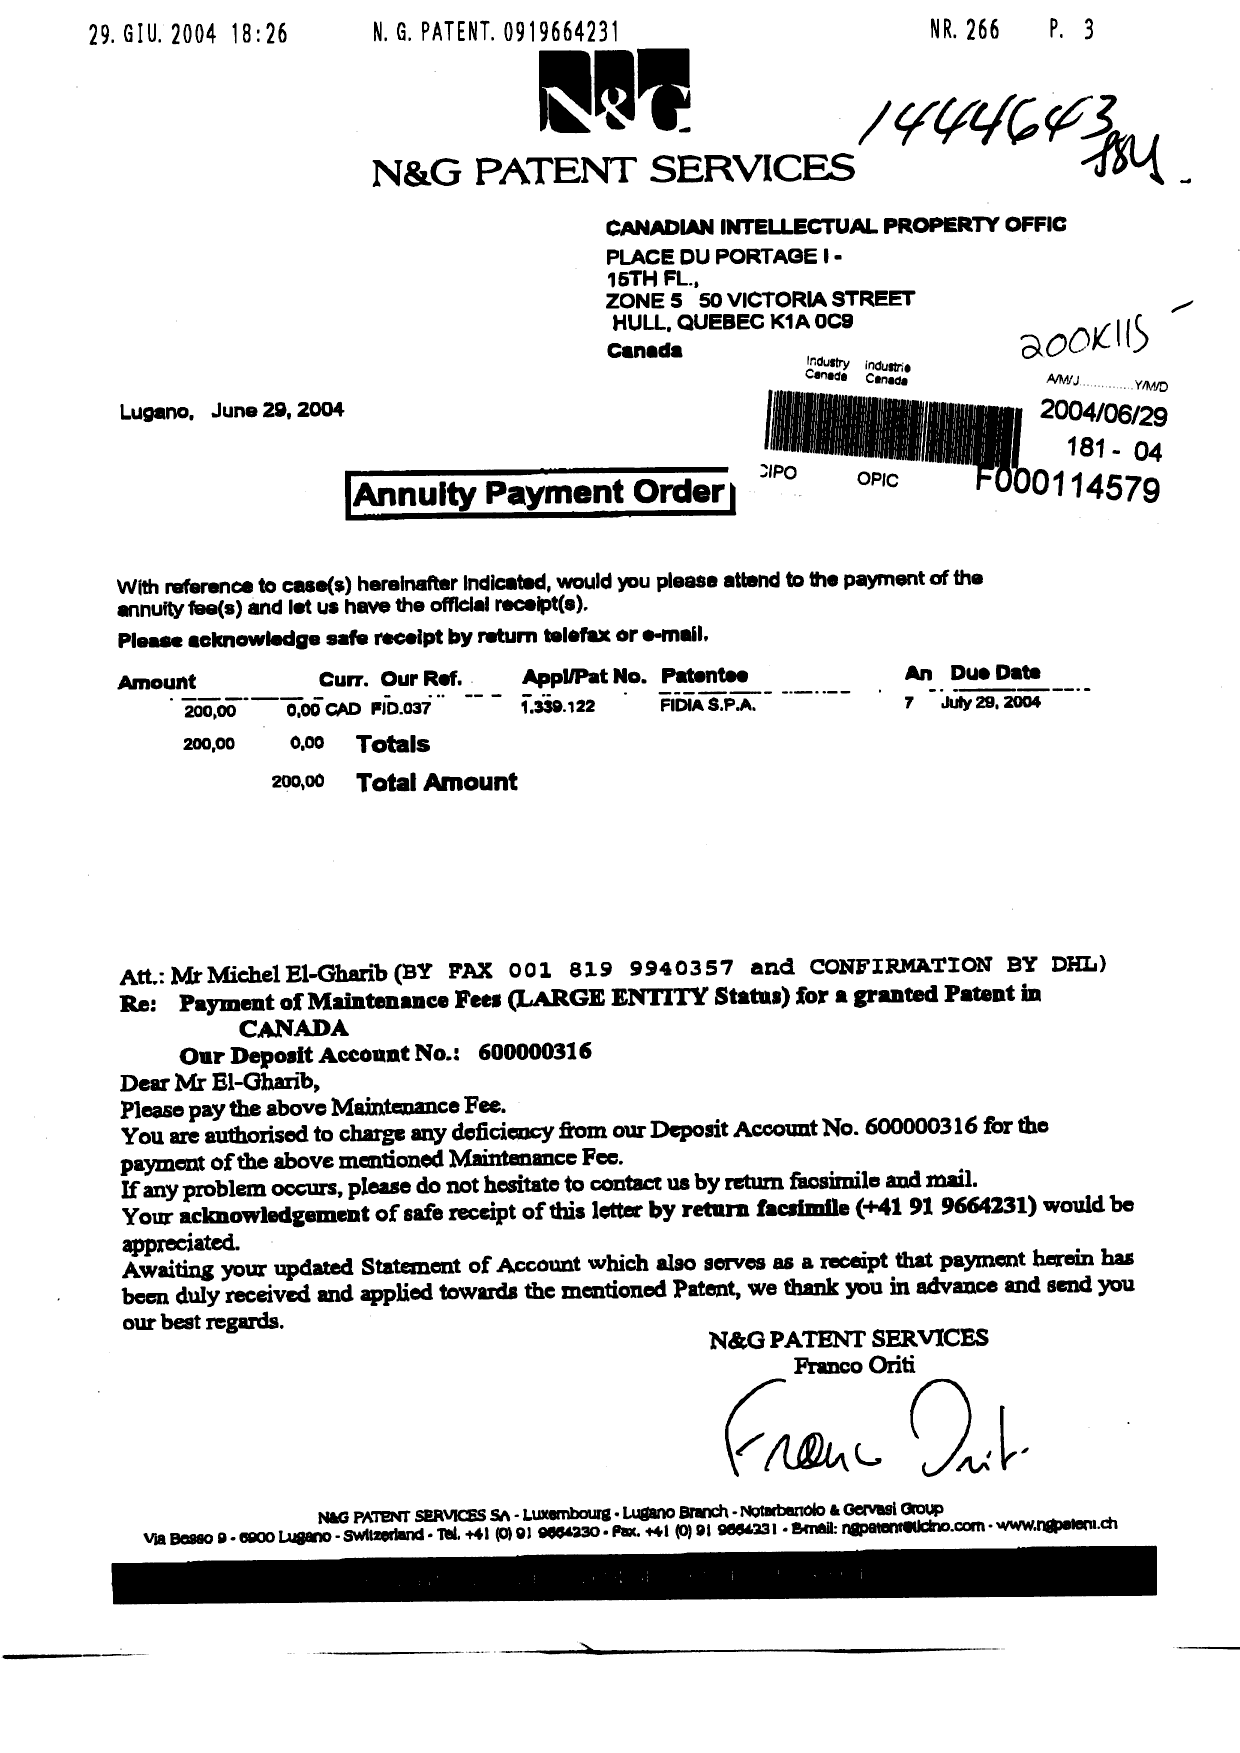 Document de brevet canadien 1339122. Taxes 20040629. Image 1 de 1